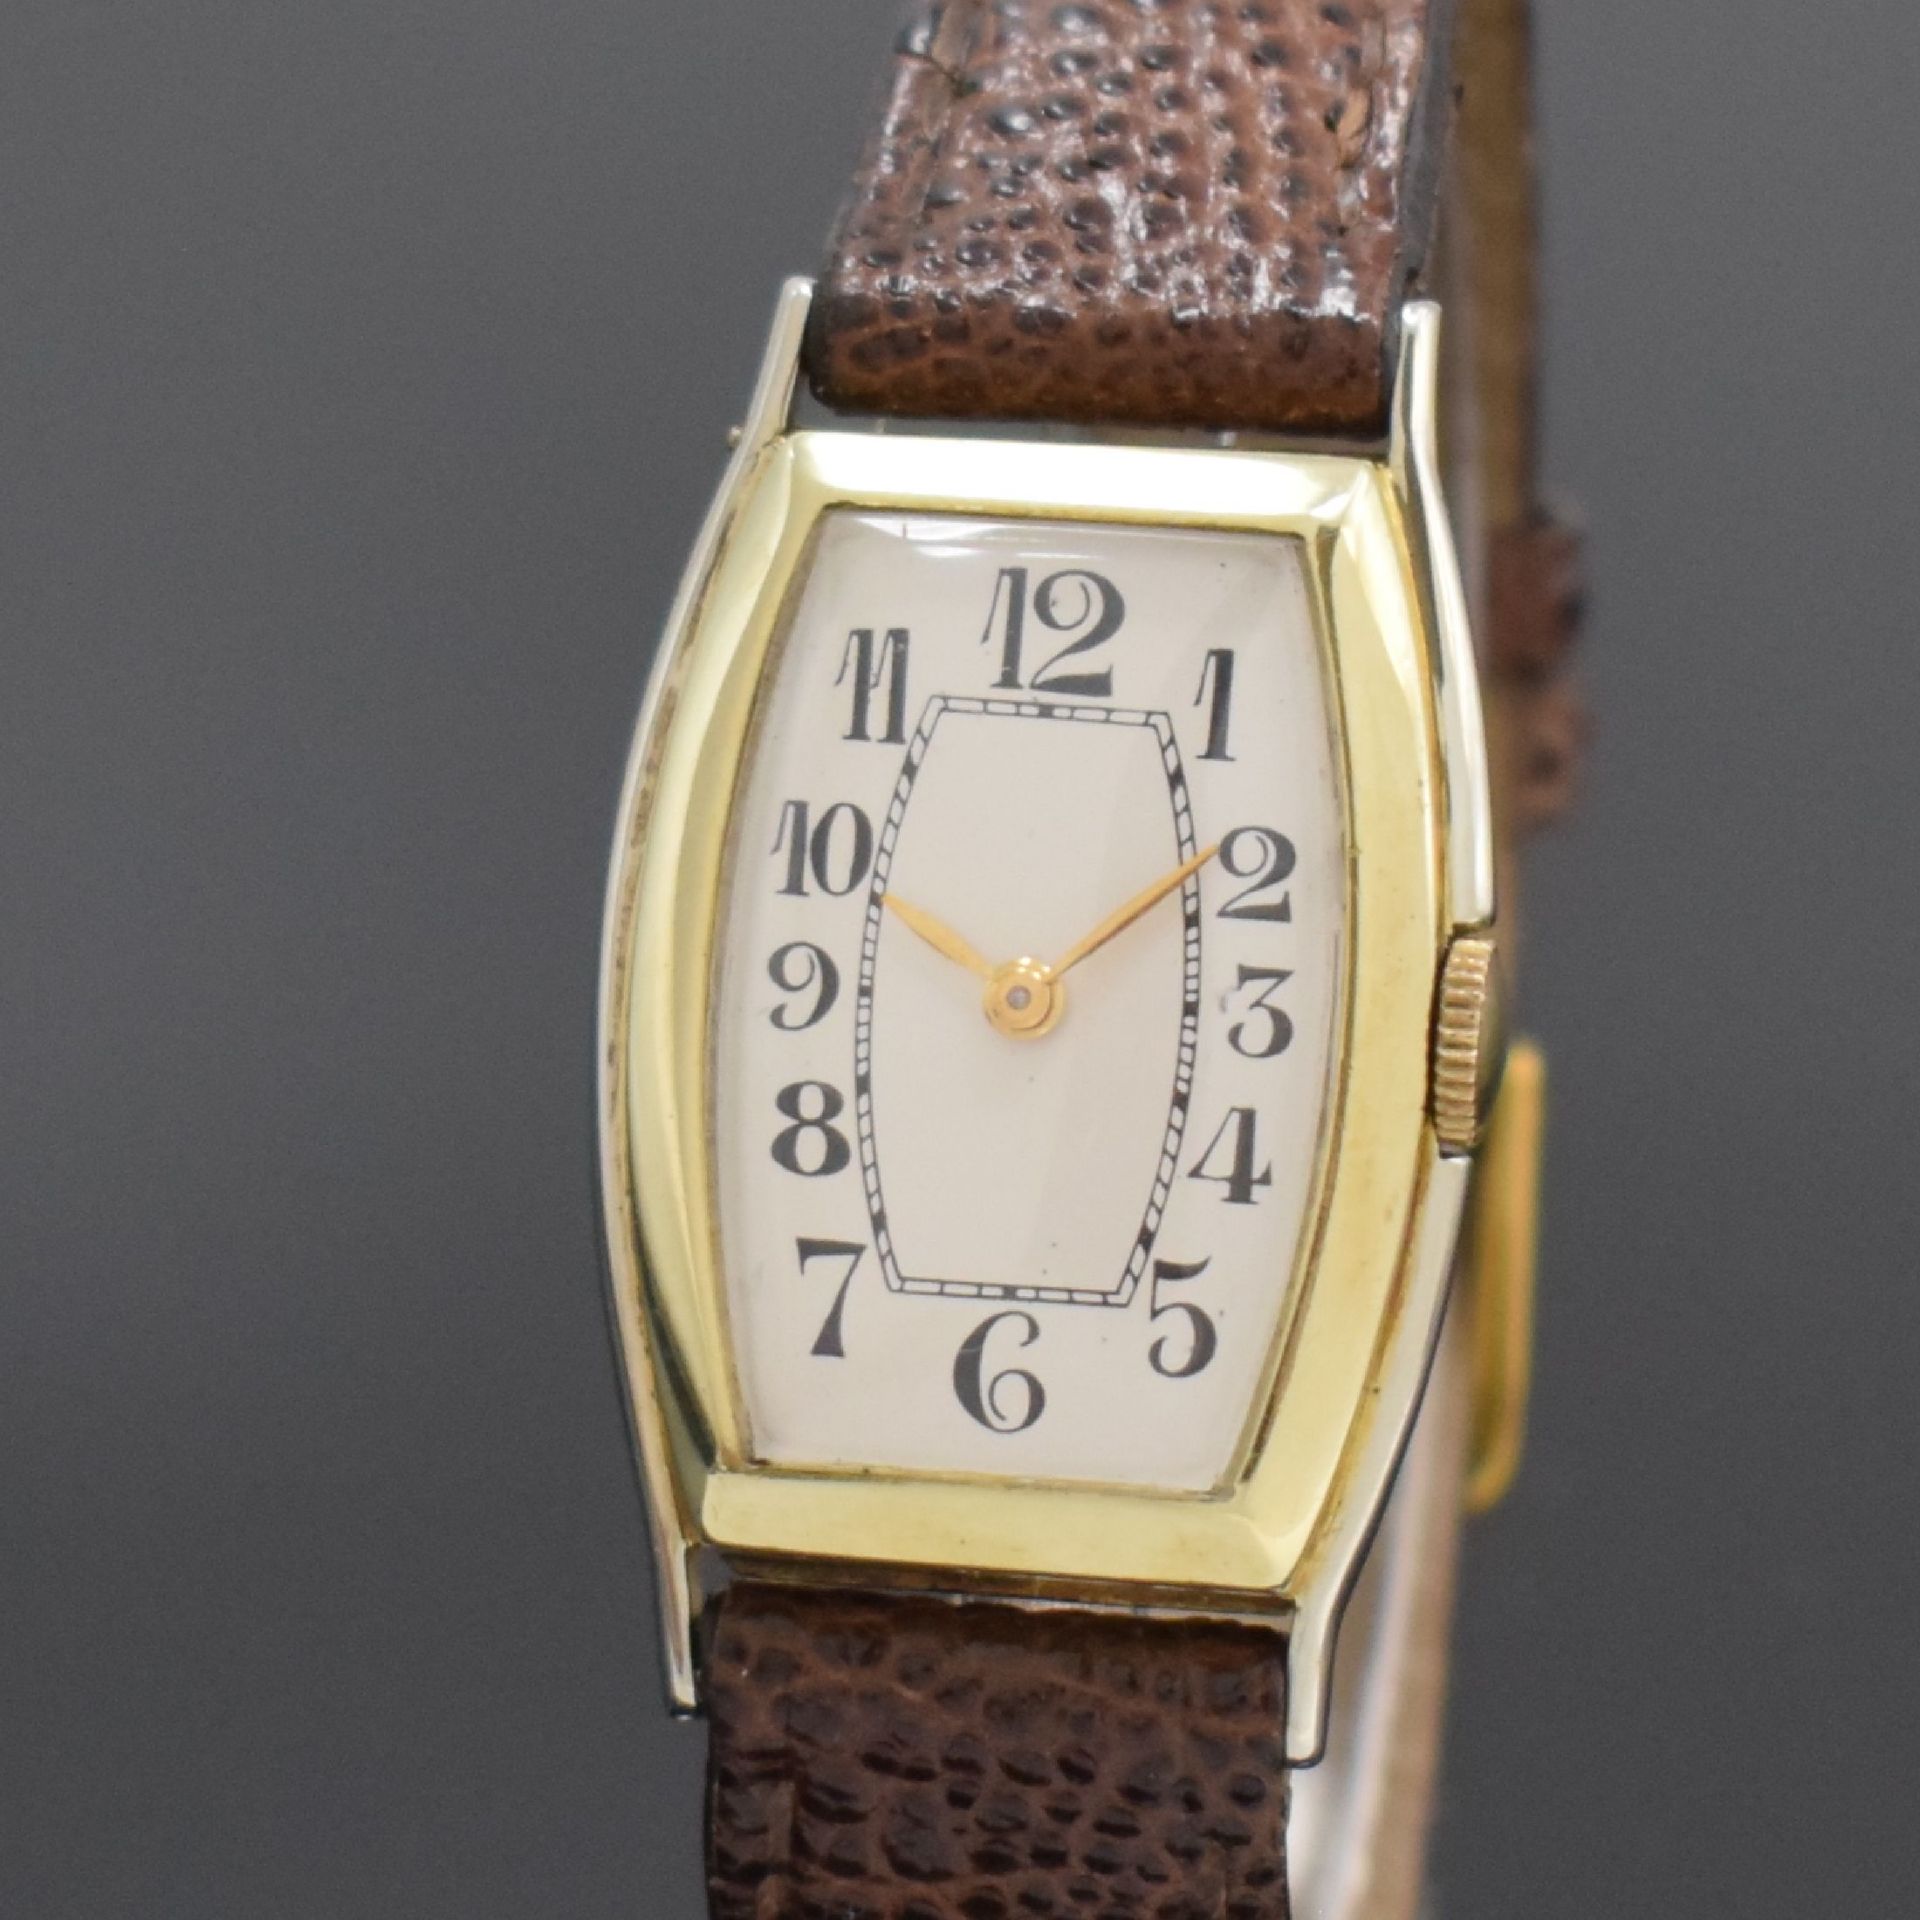 ORMONT WATCH CO Armbanduhr in 14k WG/GG,  Schweiz / USA um - Bild 2 aus 6